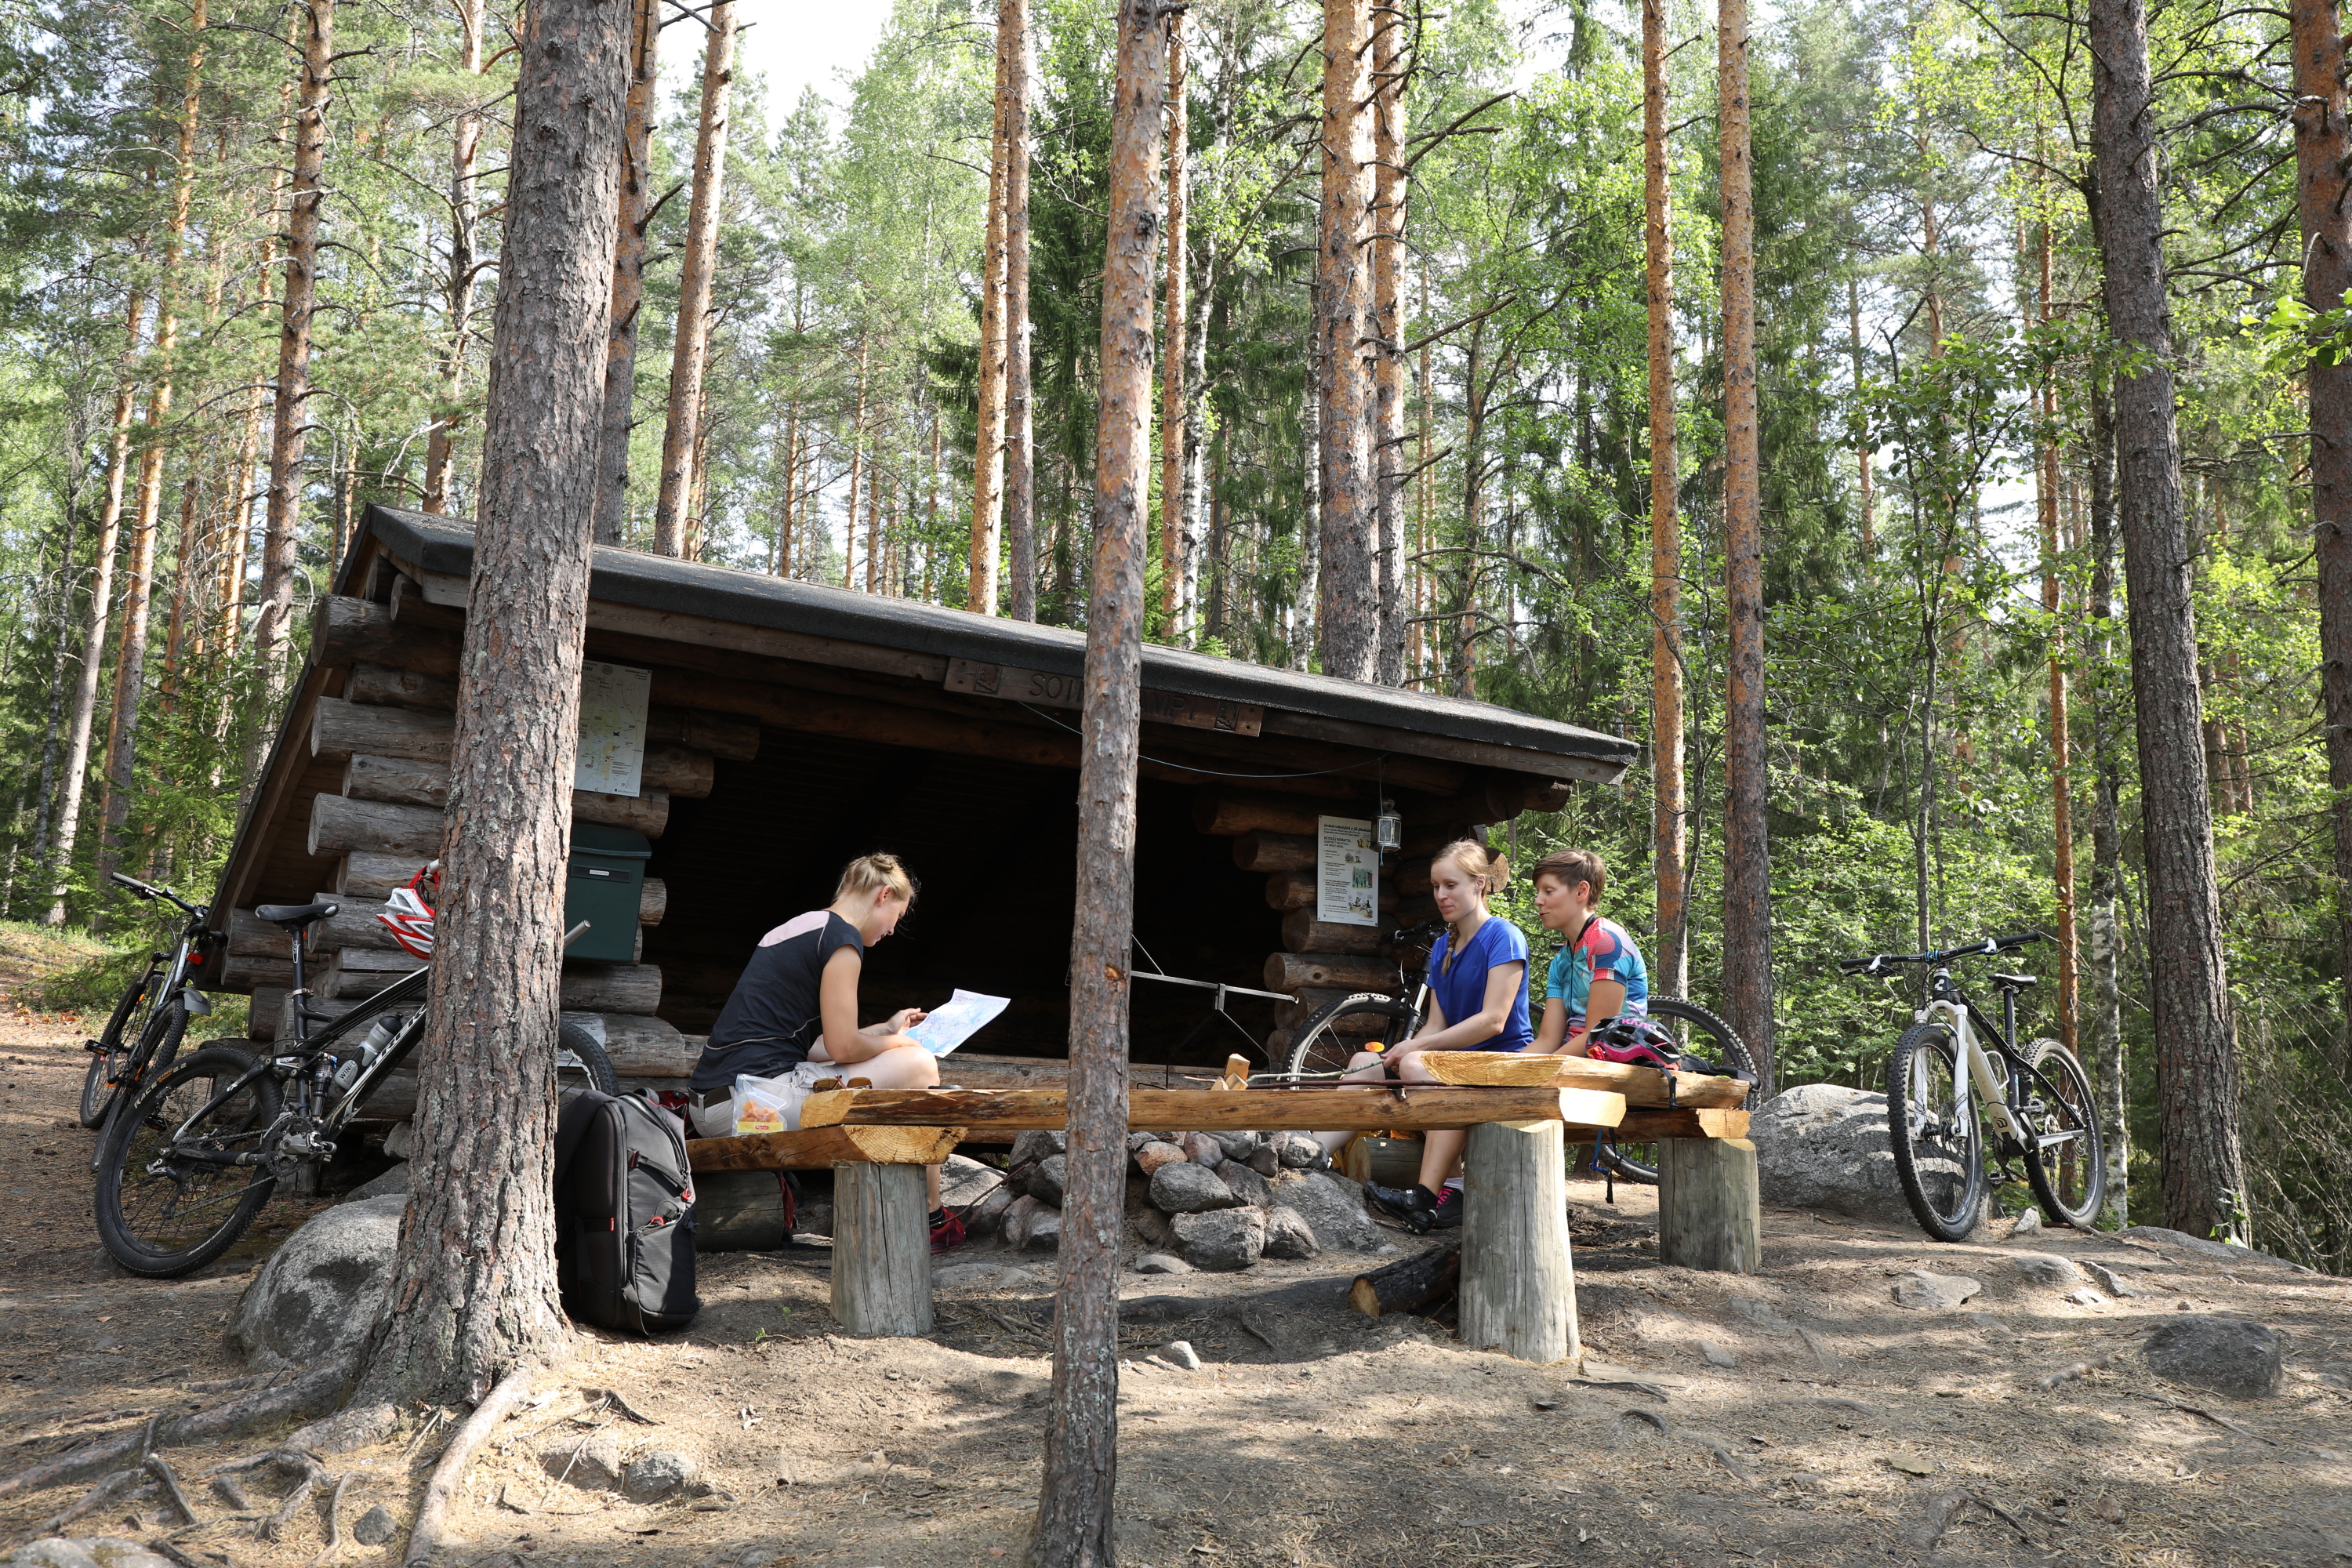 Pyorailytauko-laavu-Leivonmäki-kansallispuisto6 - Aito Maaseutu